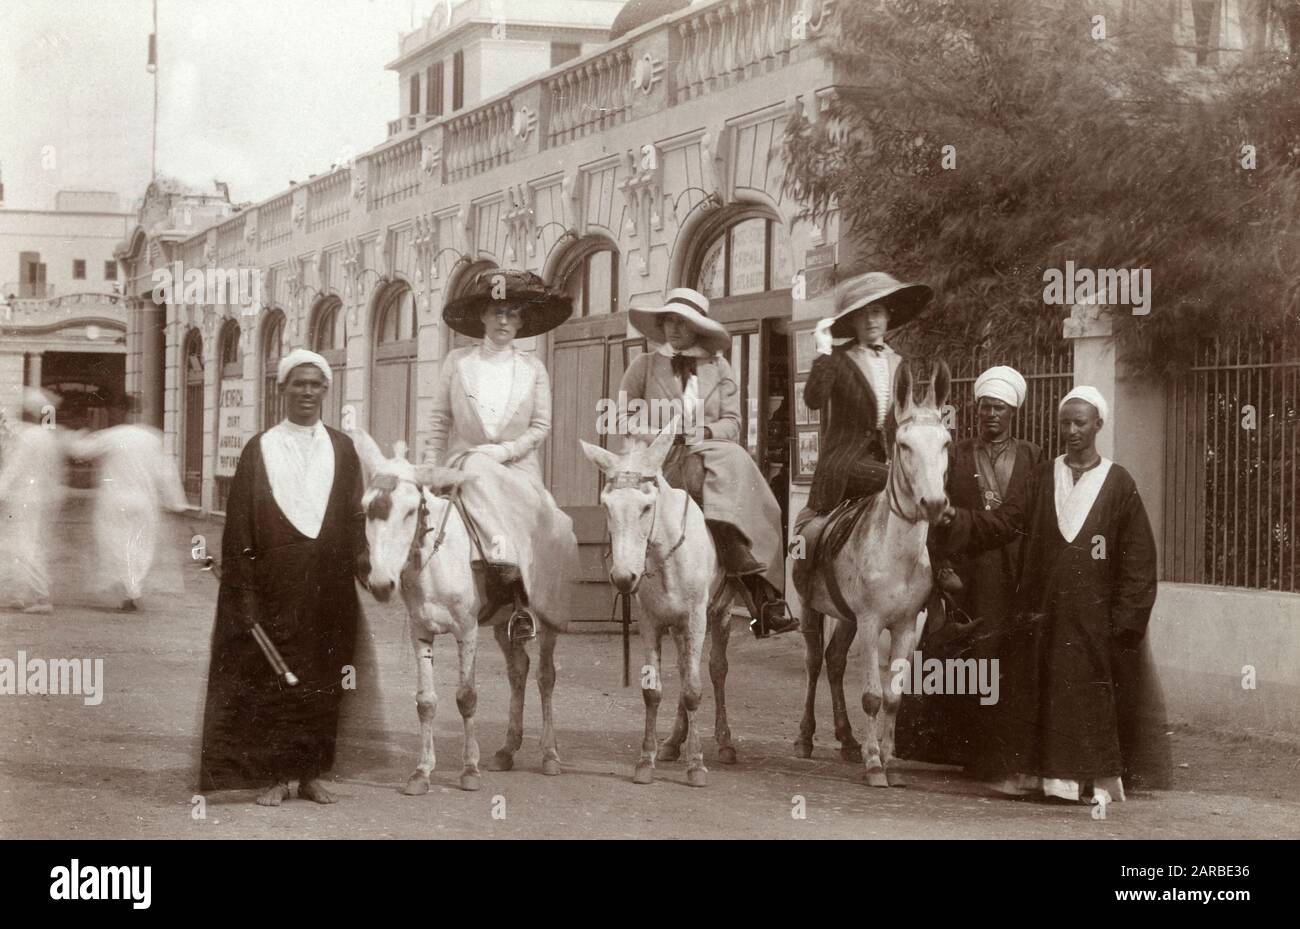 Drei große britische Frauen-Touristen machen einen Maultierritt - Kairo, Ägypten. Stockfoto